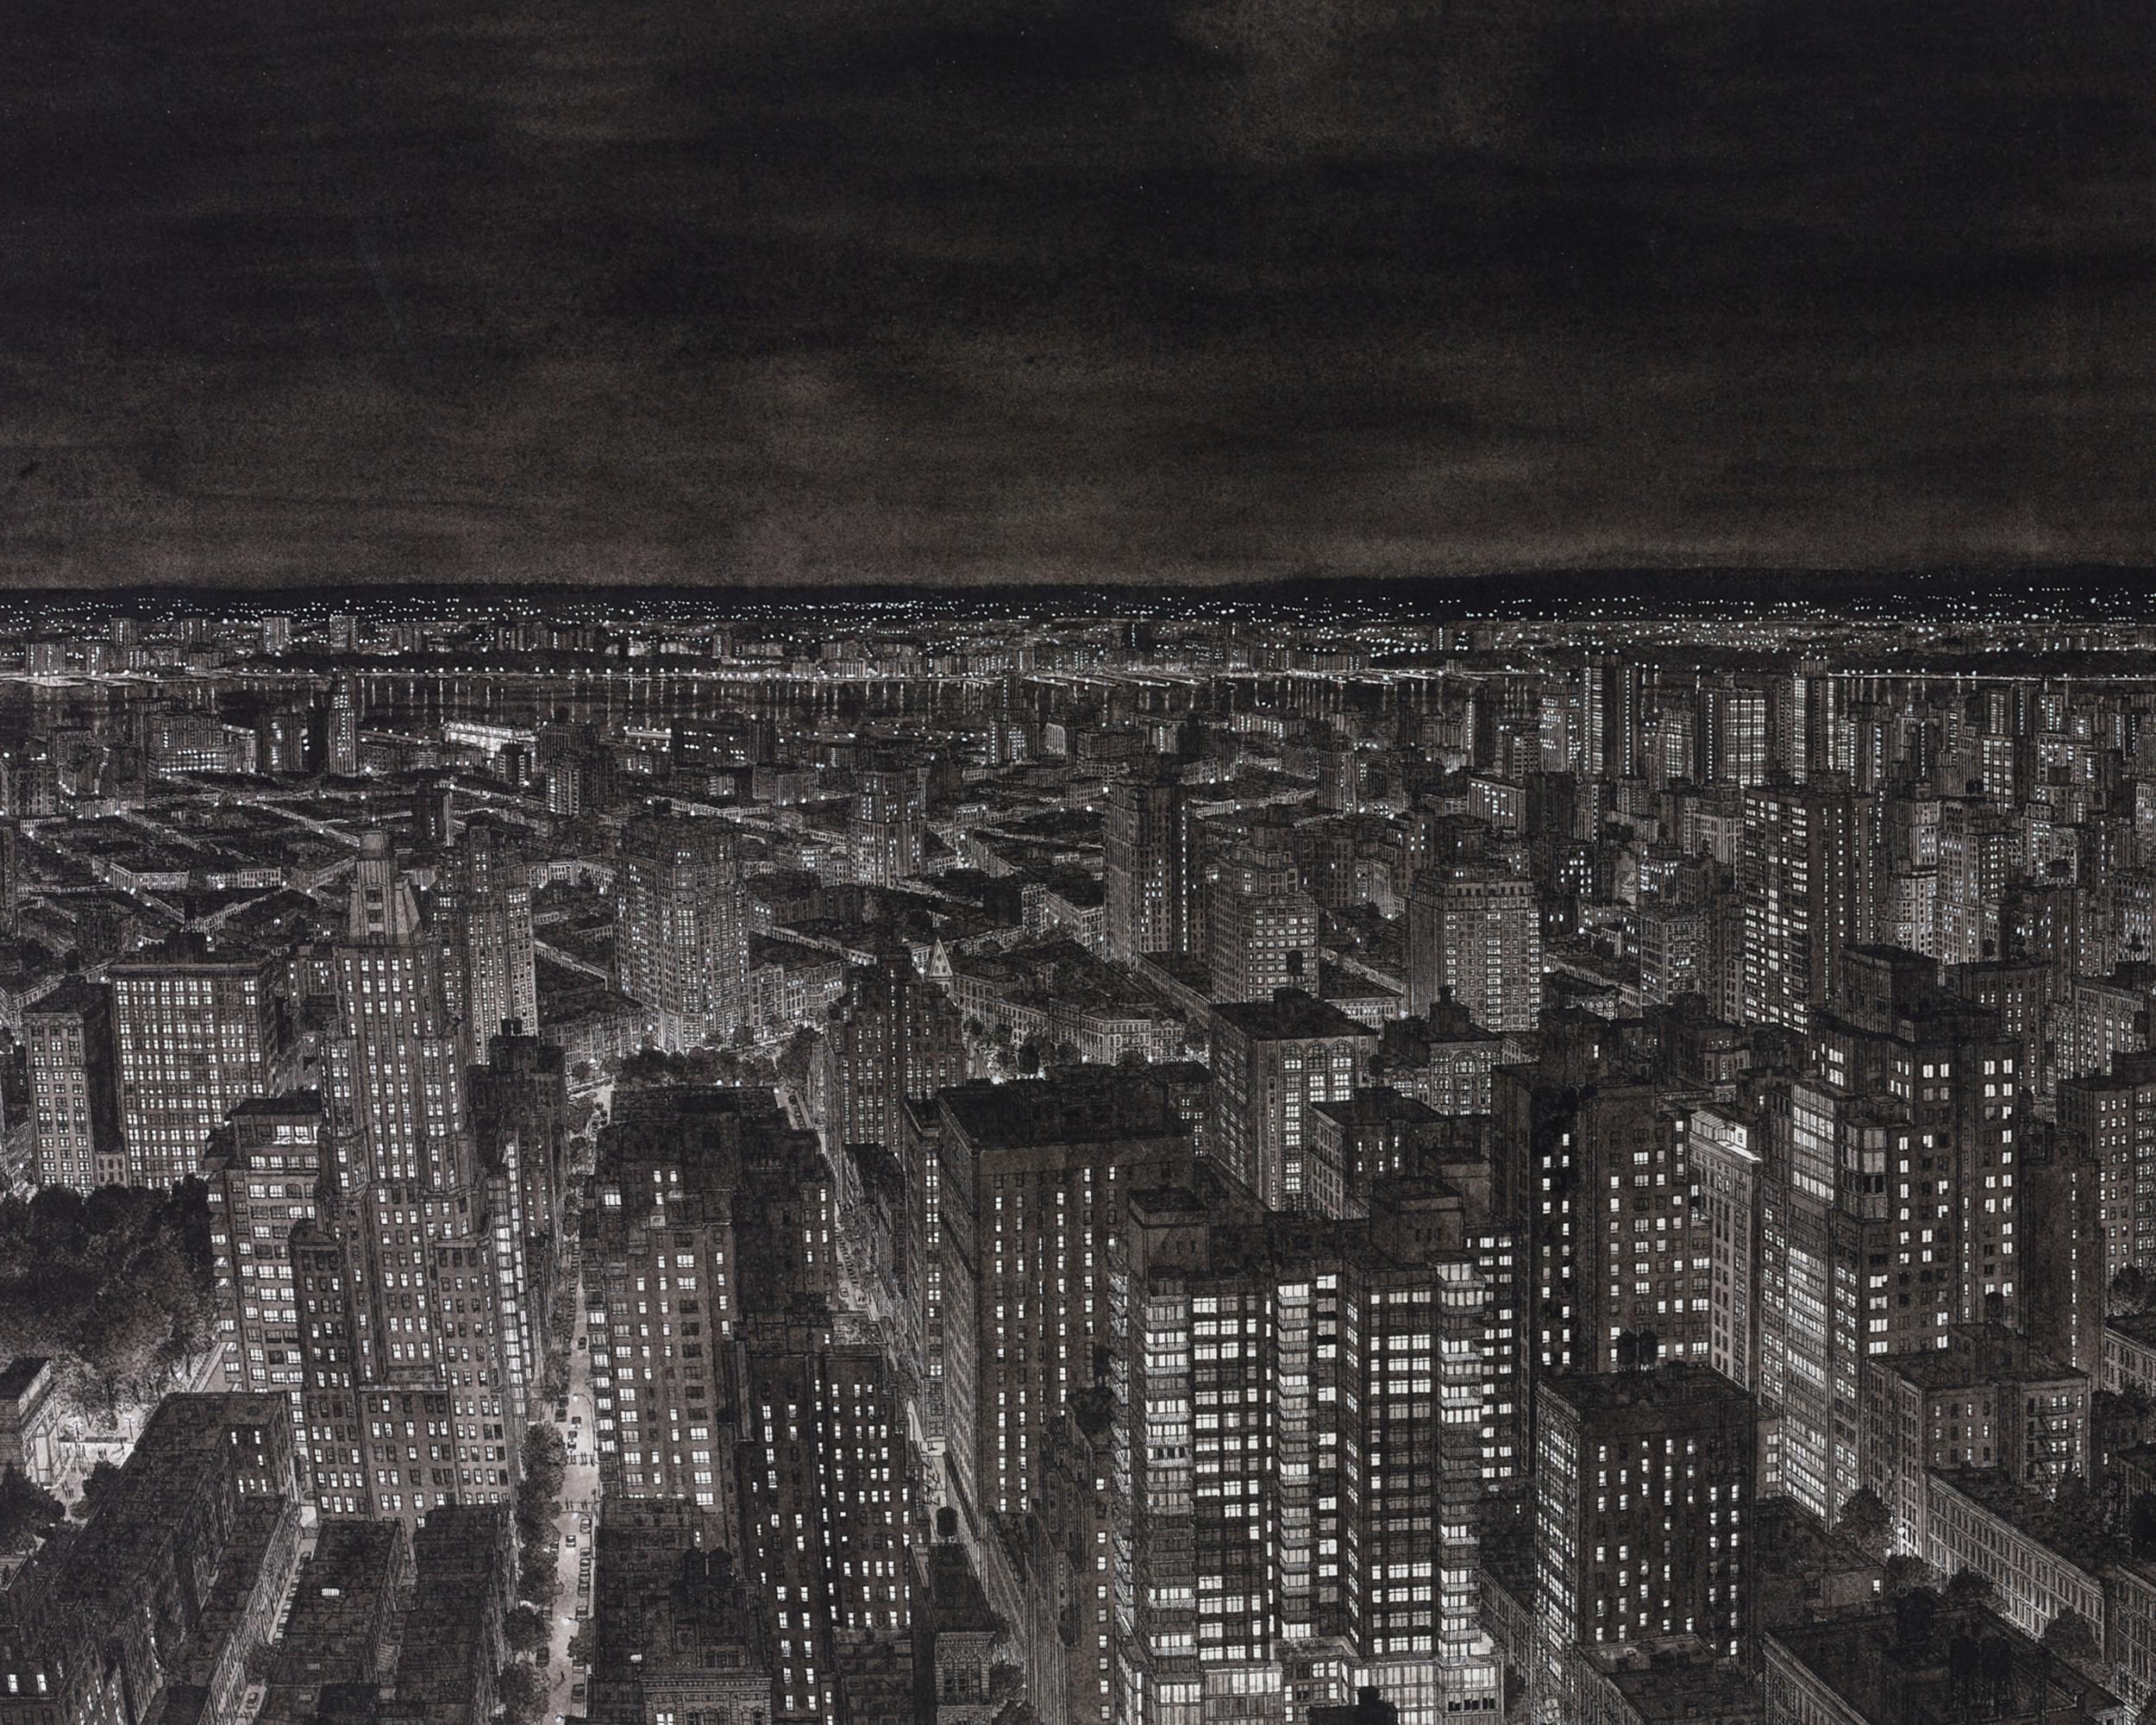 Manhattan at Night - Photorealist Art by Stefan Bleekrode